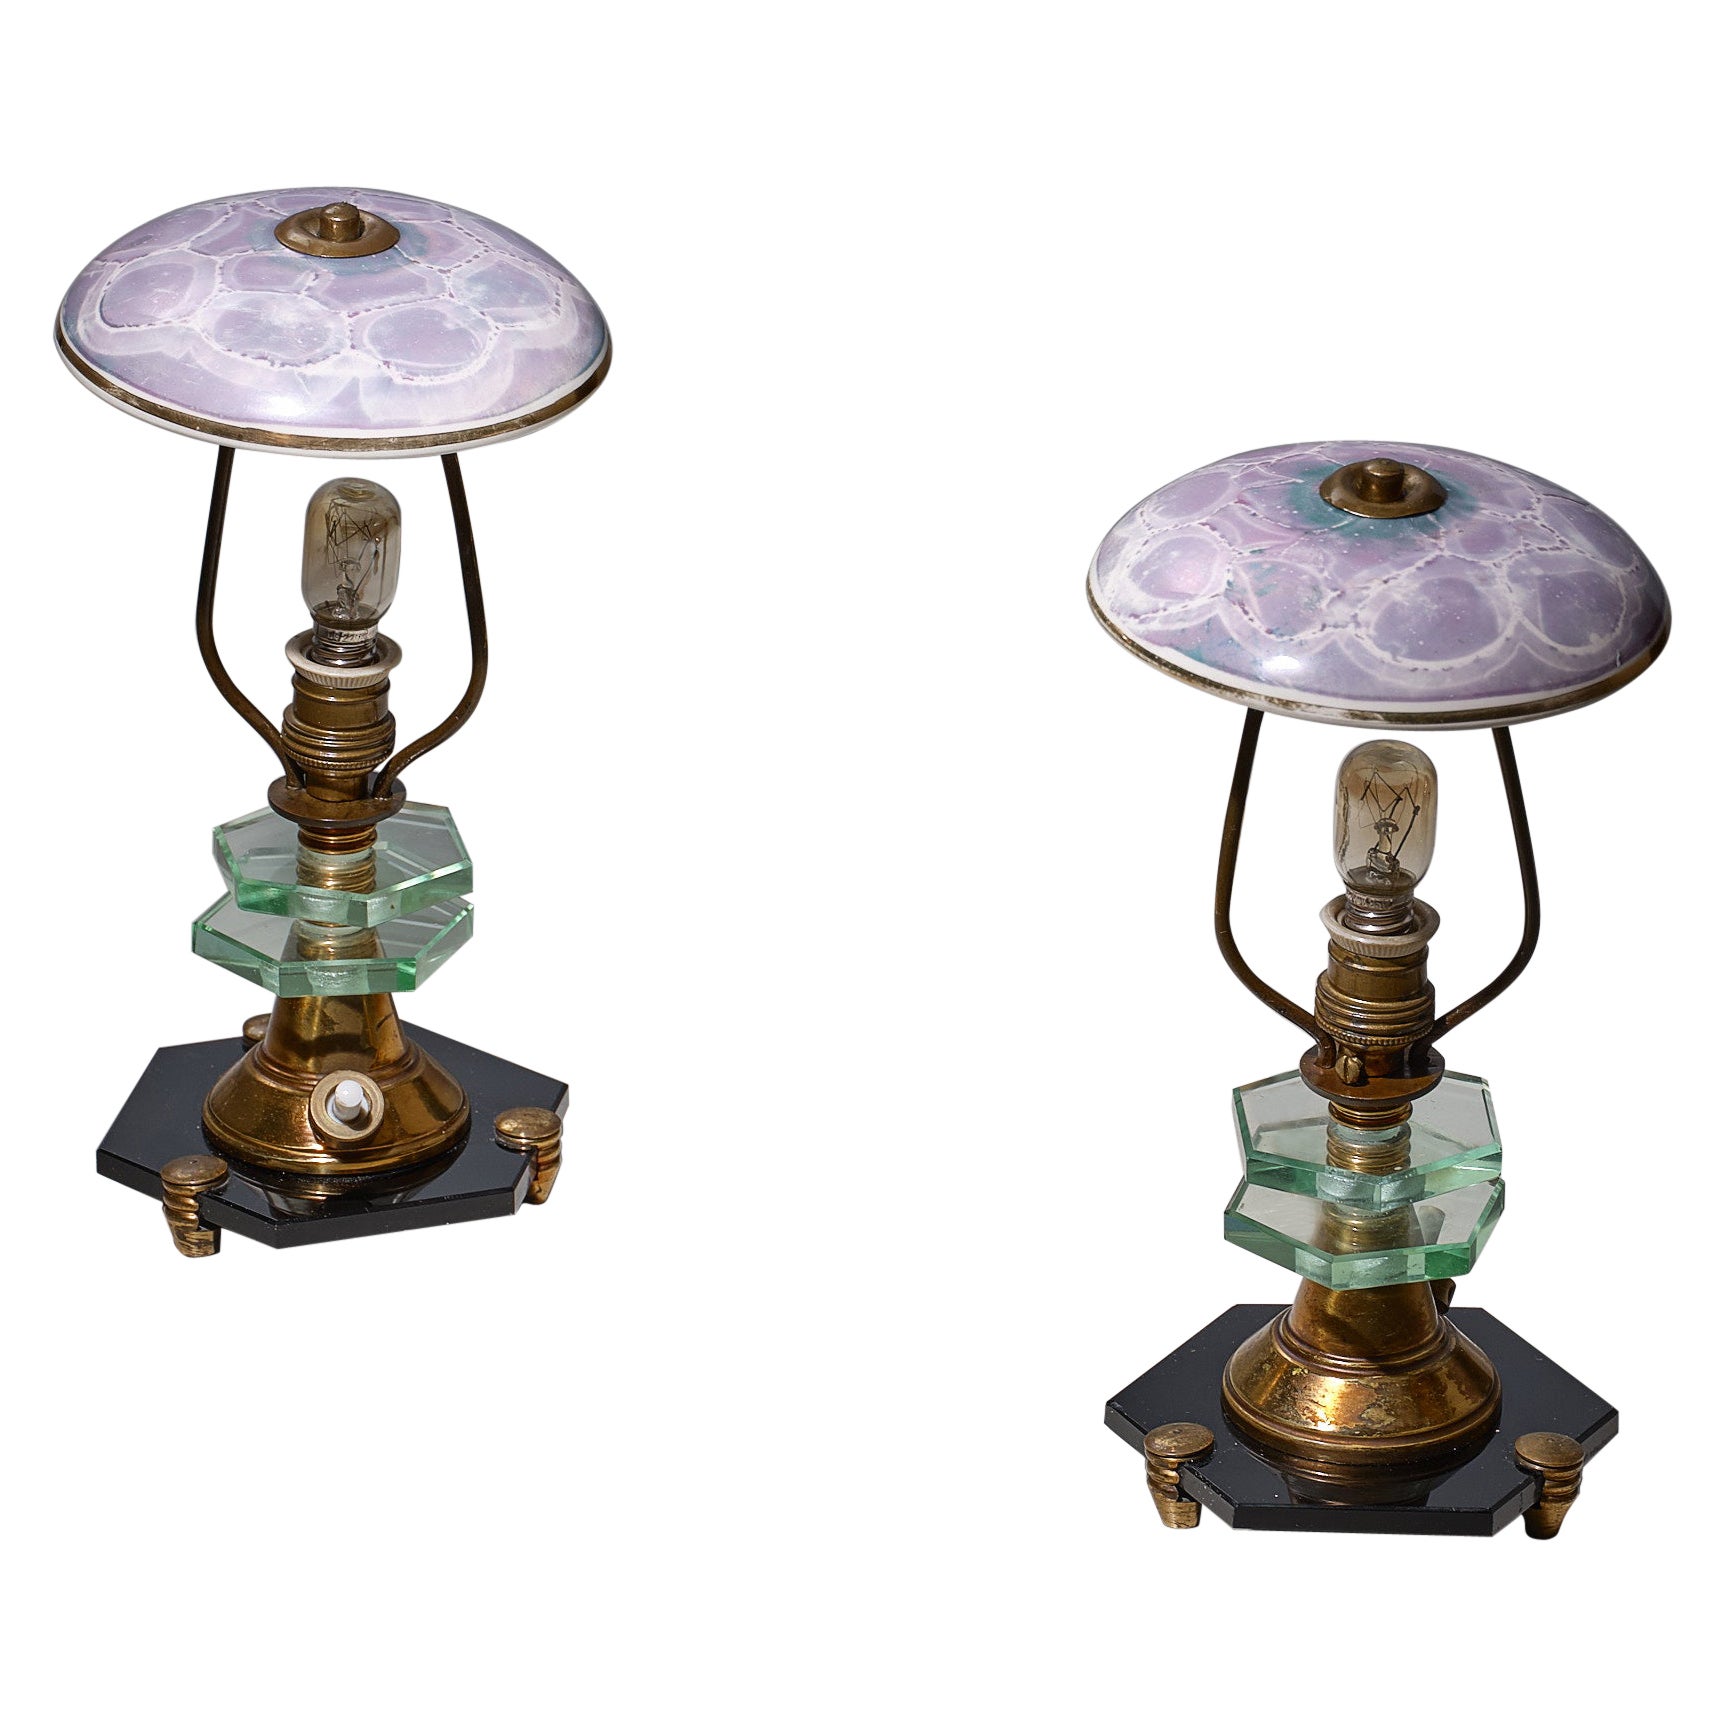 Paar italienische Tischlampen aus den 1950er Jahren – Messing, schwarzer Glassockel, Keramik-Lampenschirme